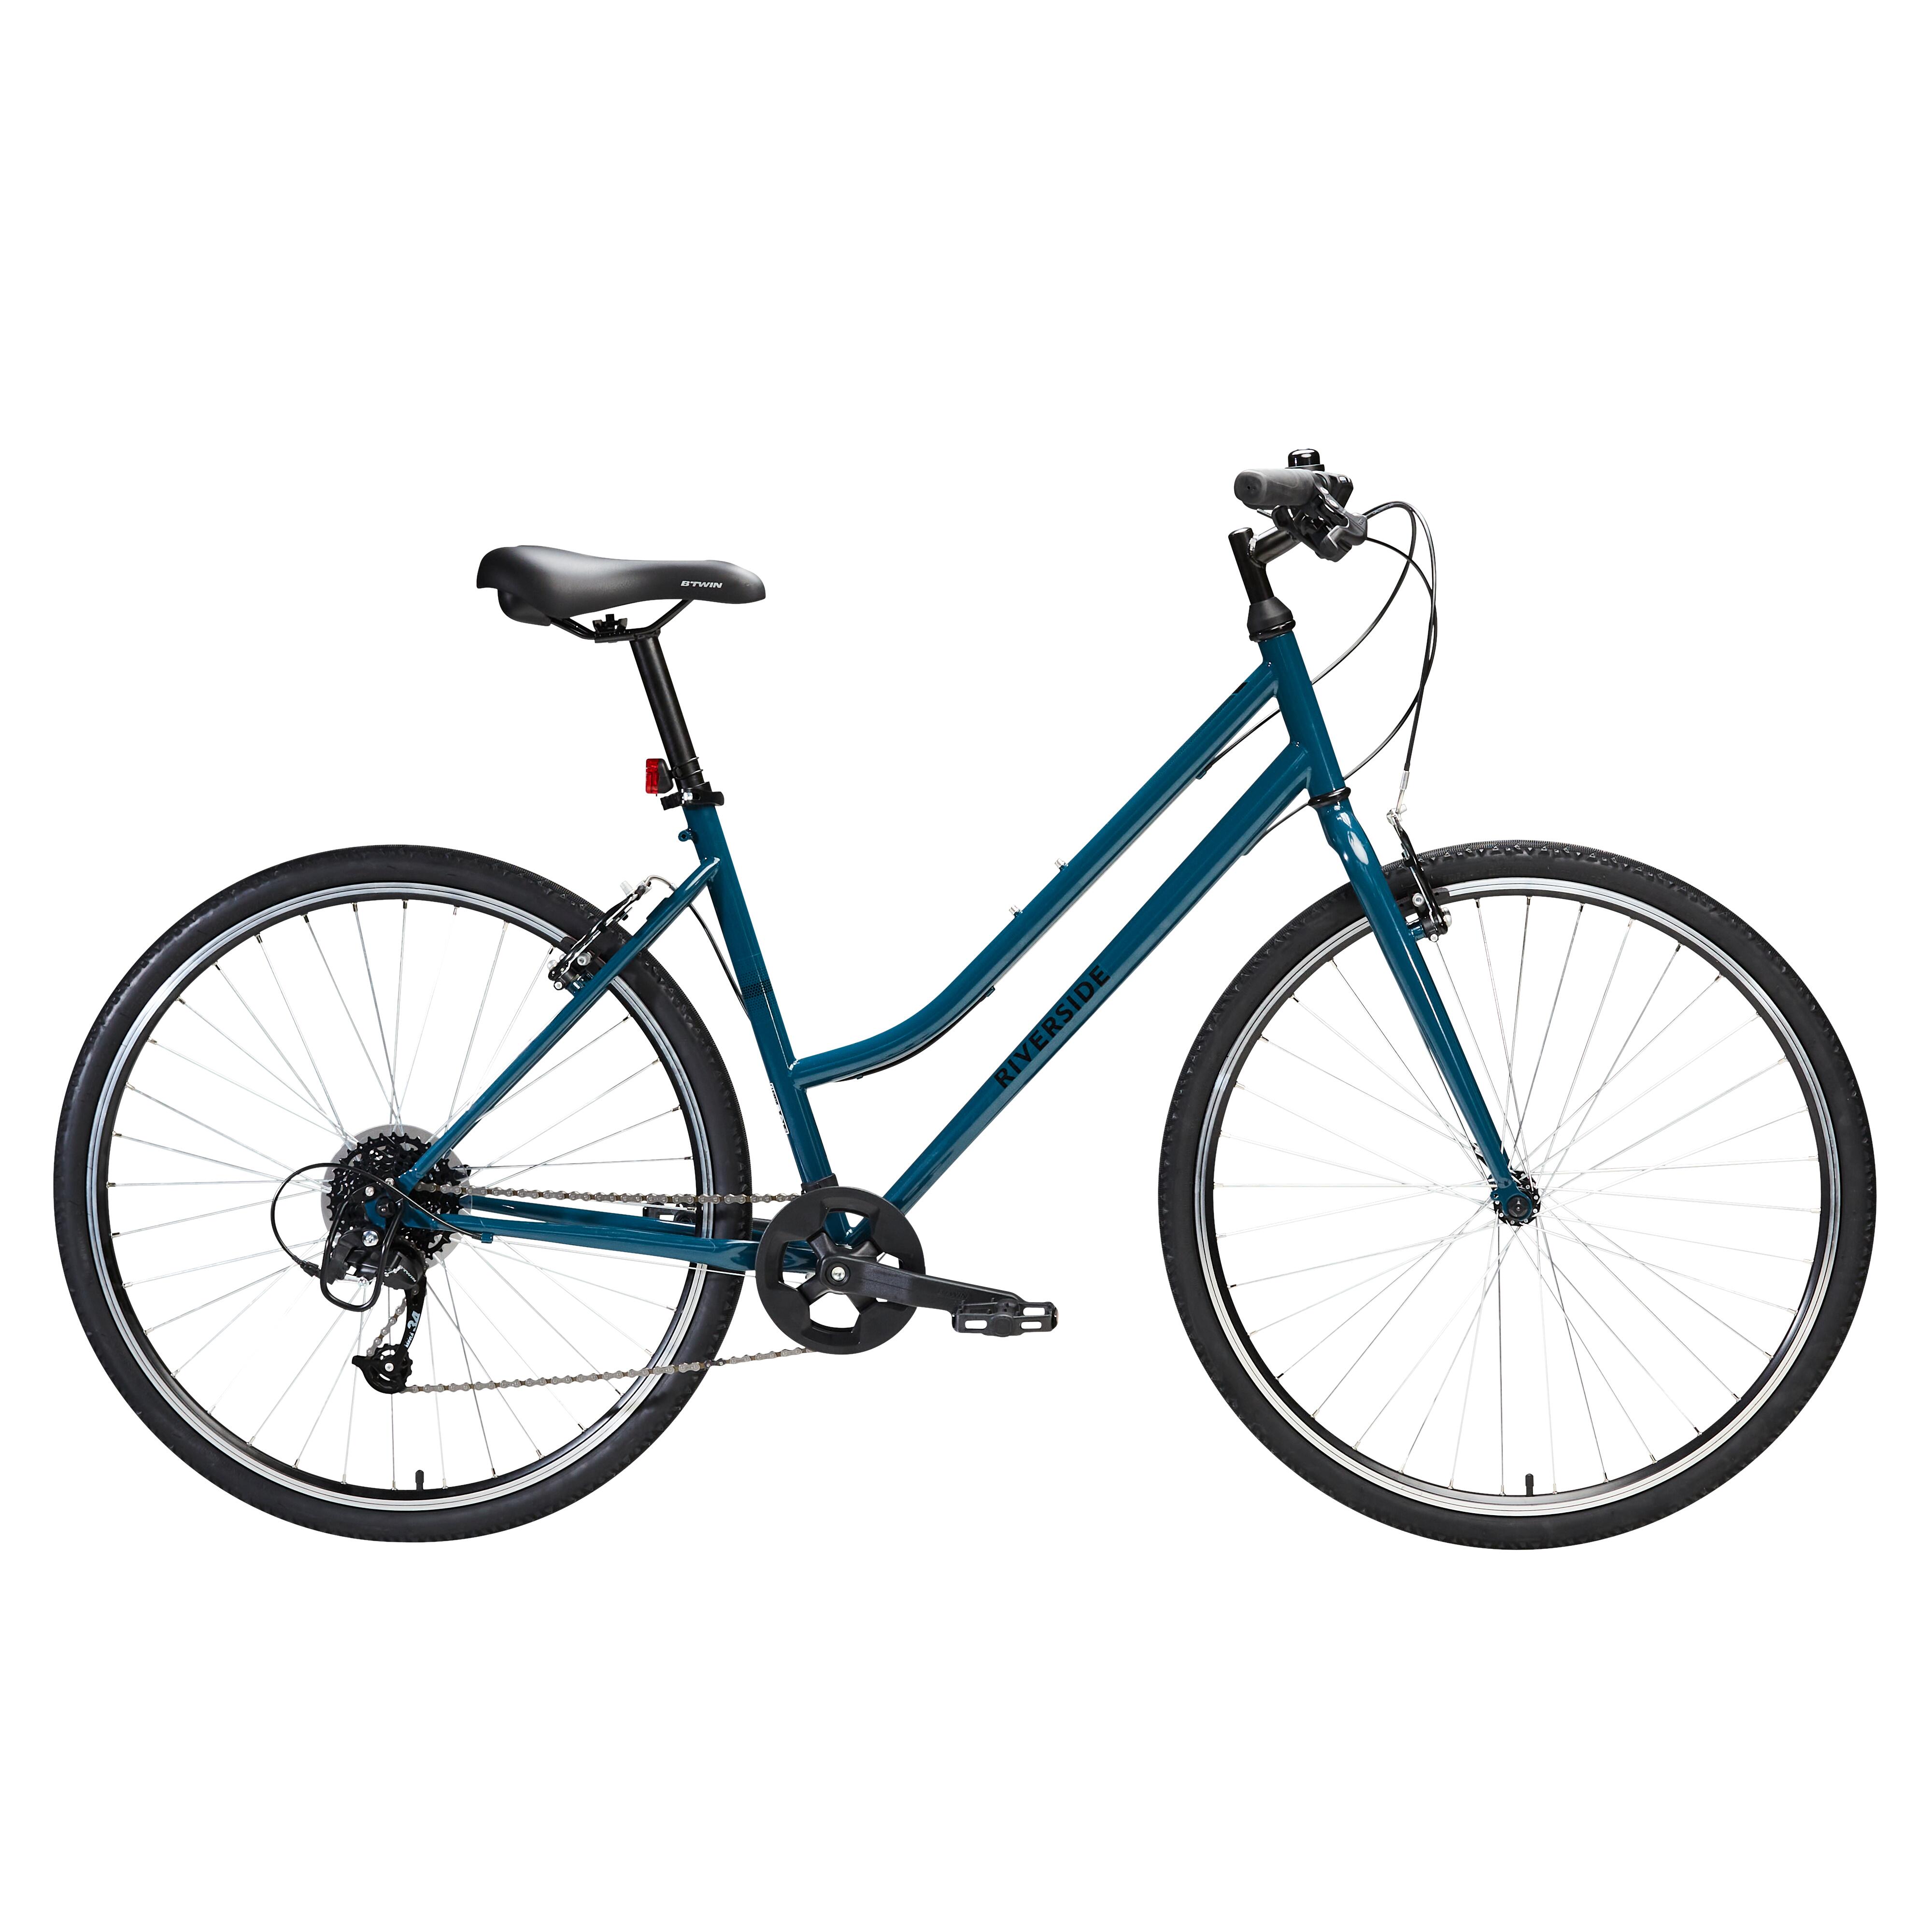 Bicicletă polivalentă Riverside 120 Albastru Petrol decathlon.ro Biciclete